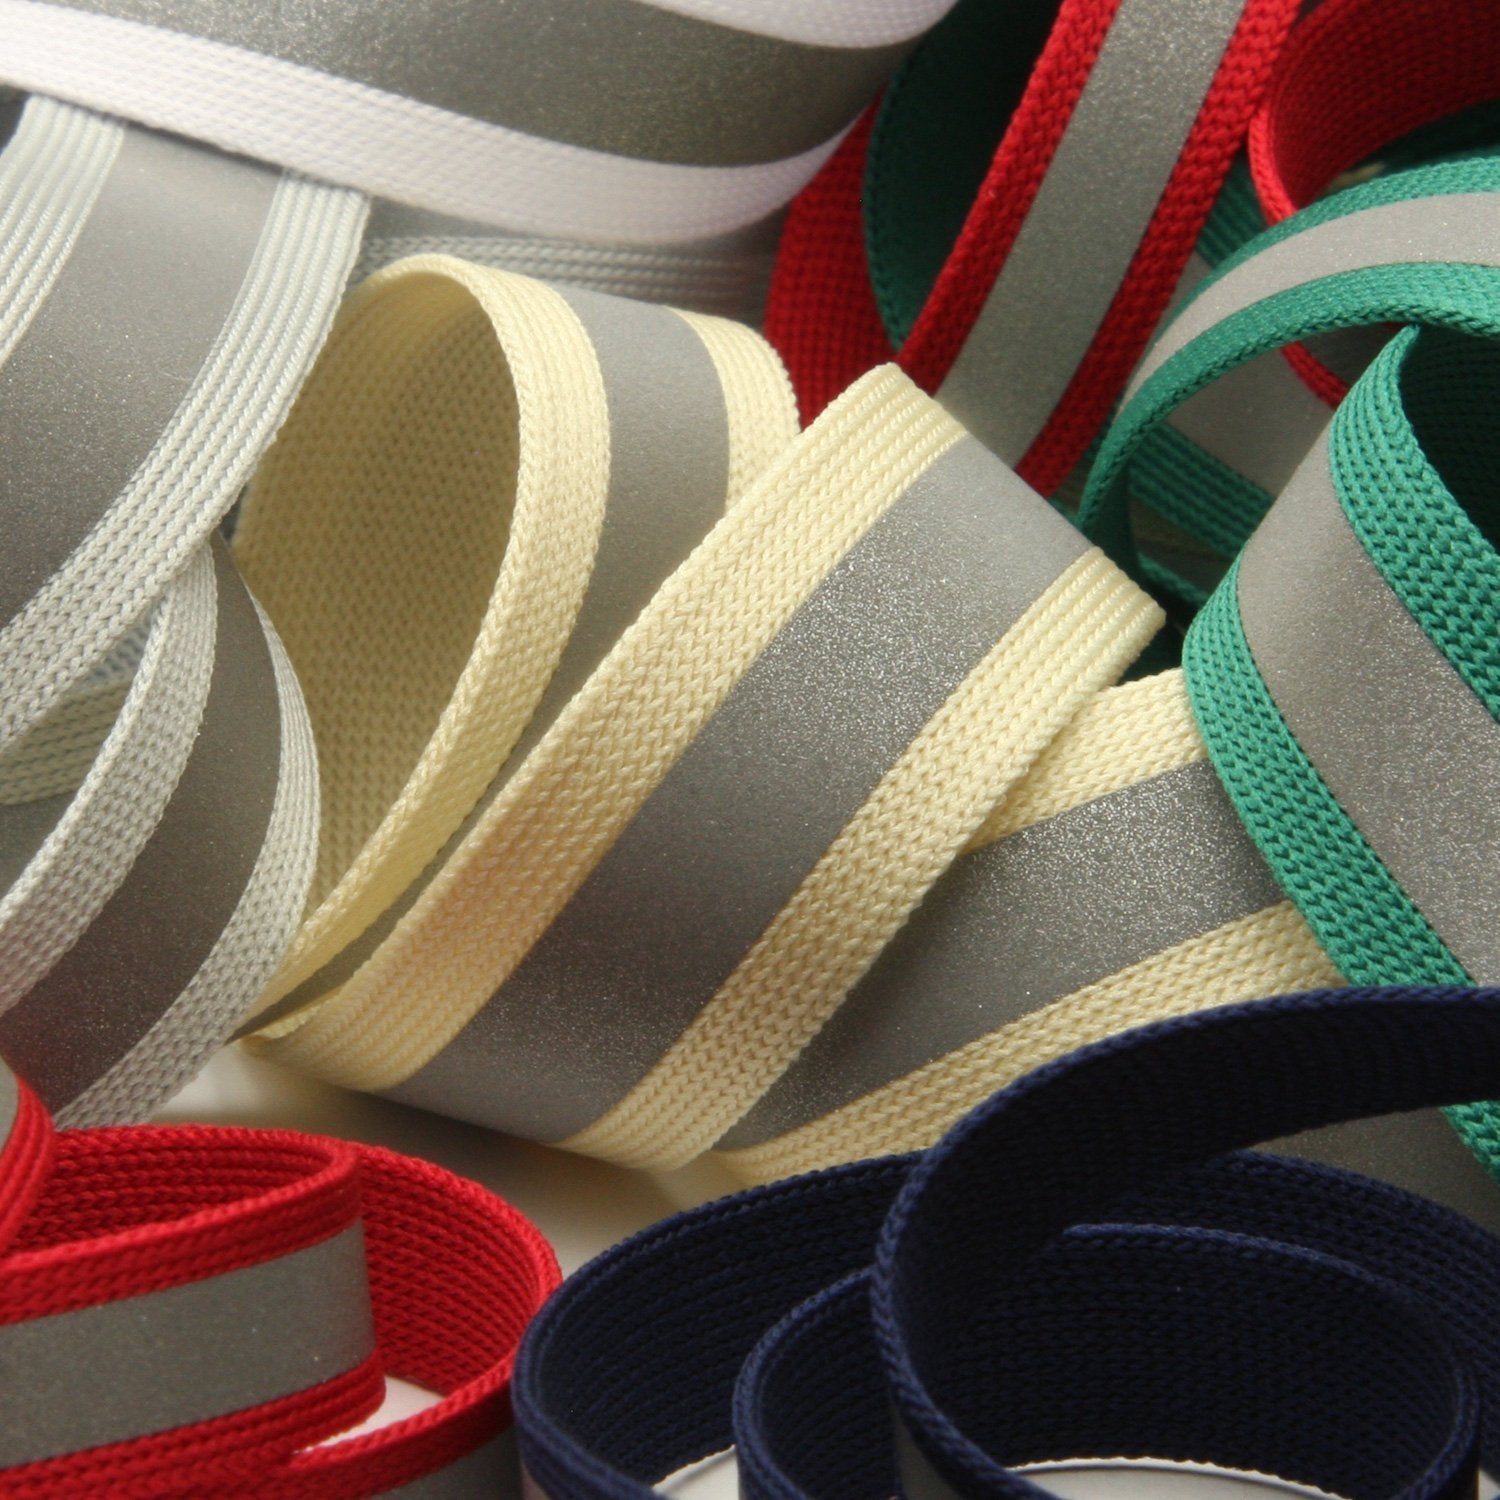 FUJIYAMA RIBBON [Wholesale] Reflect Knit Tape 9mm 30 Meters Roll